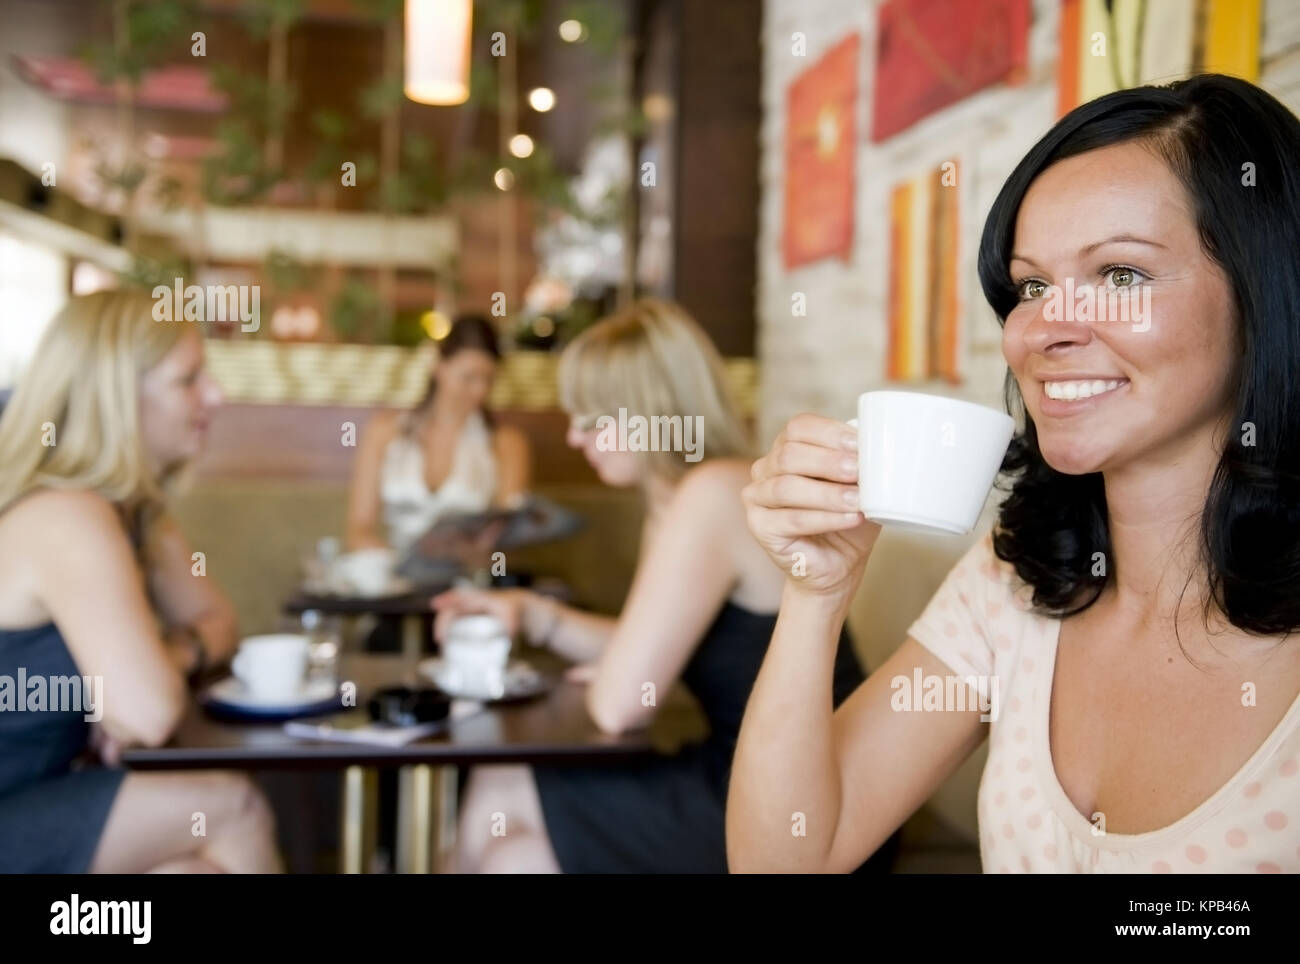 Model Release, Junge Frauen Im Kaffeehaus - junge Frauen in cafeteria Stockfoto